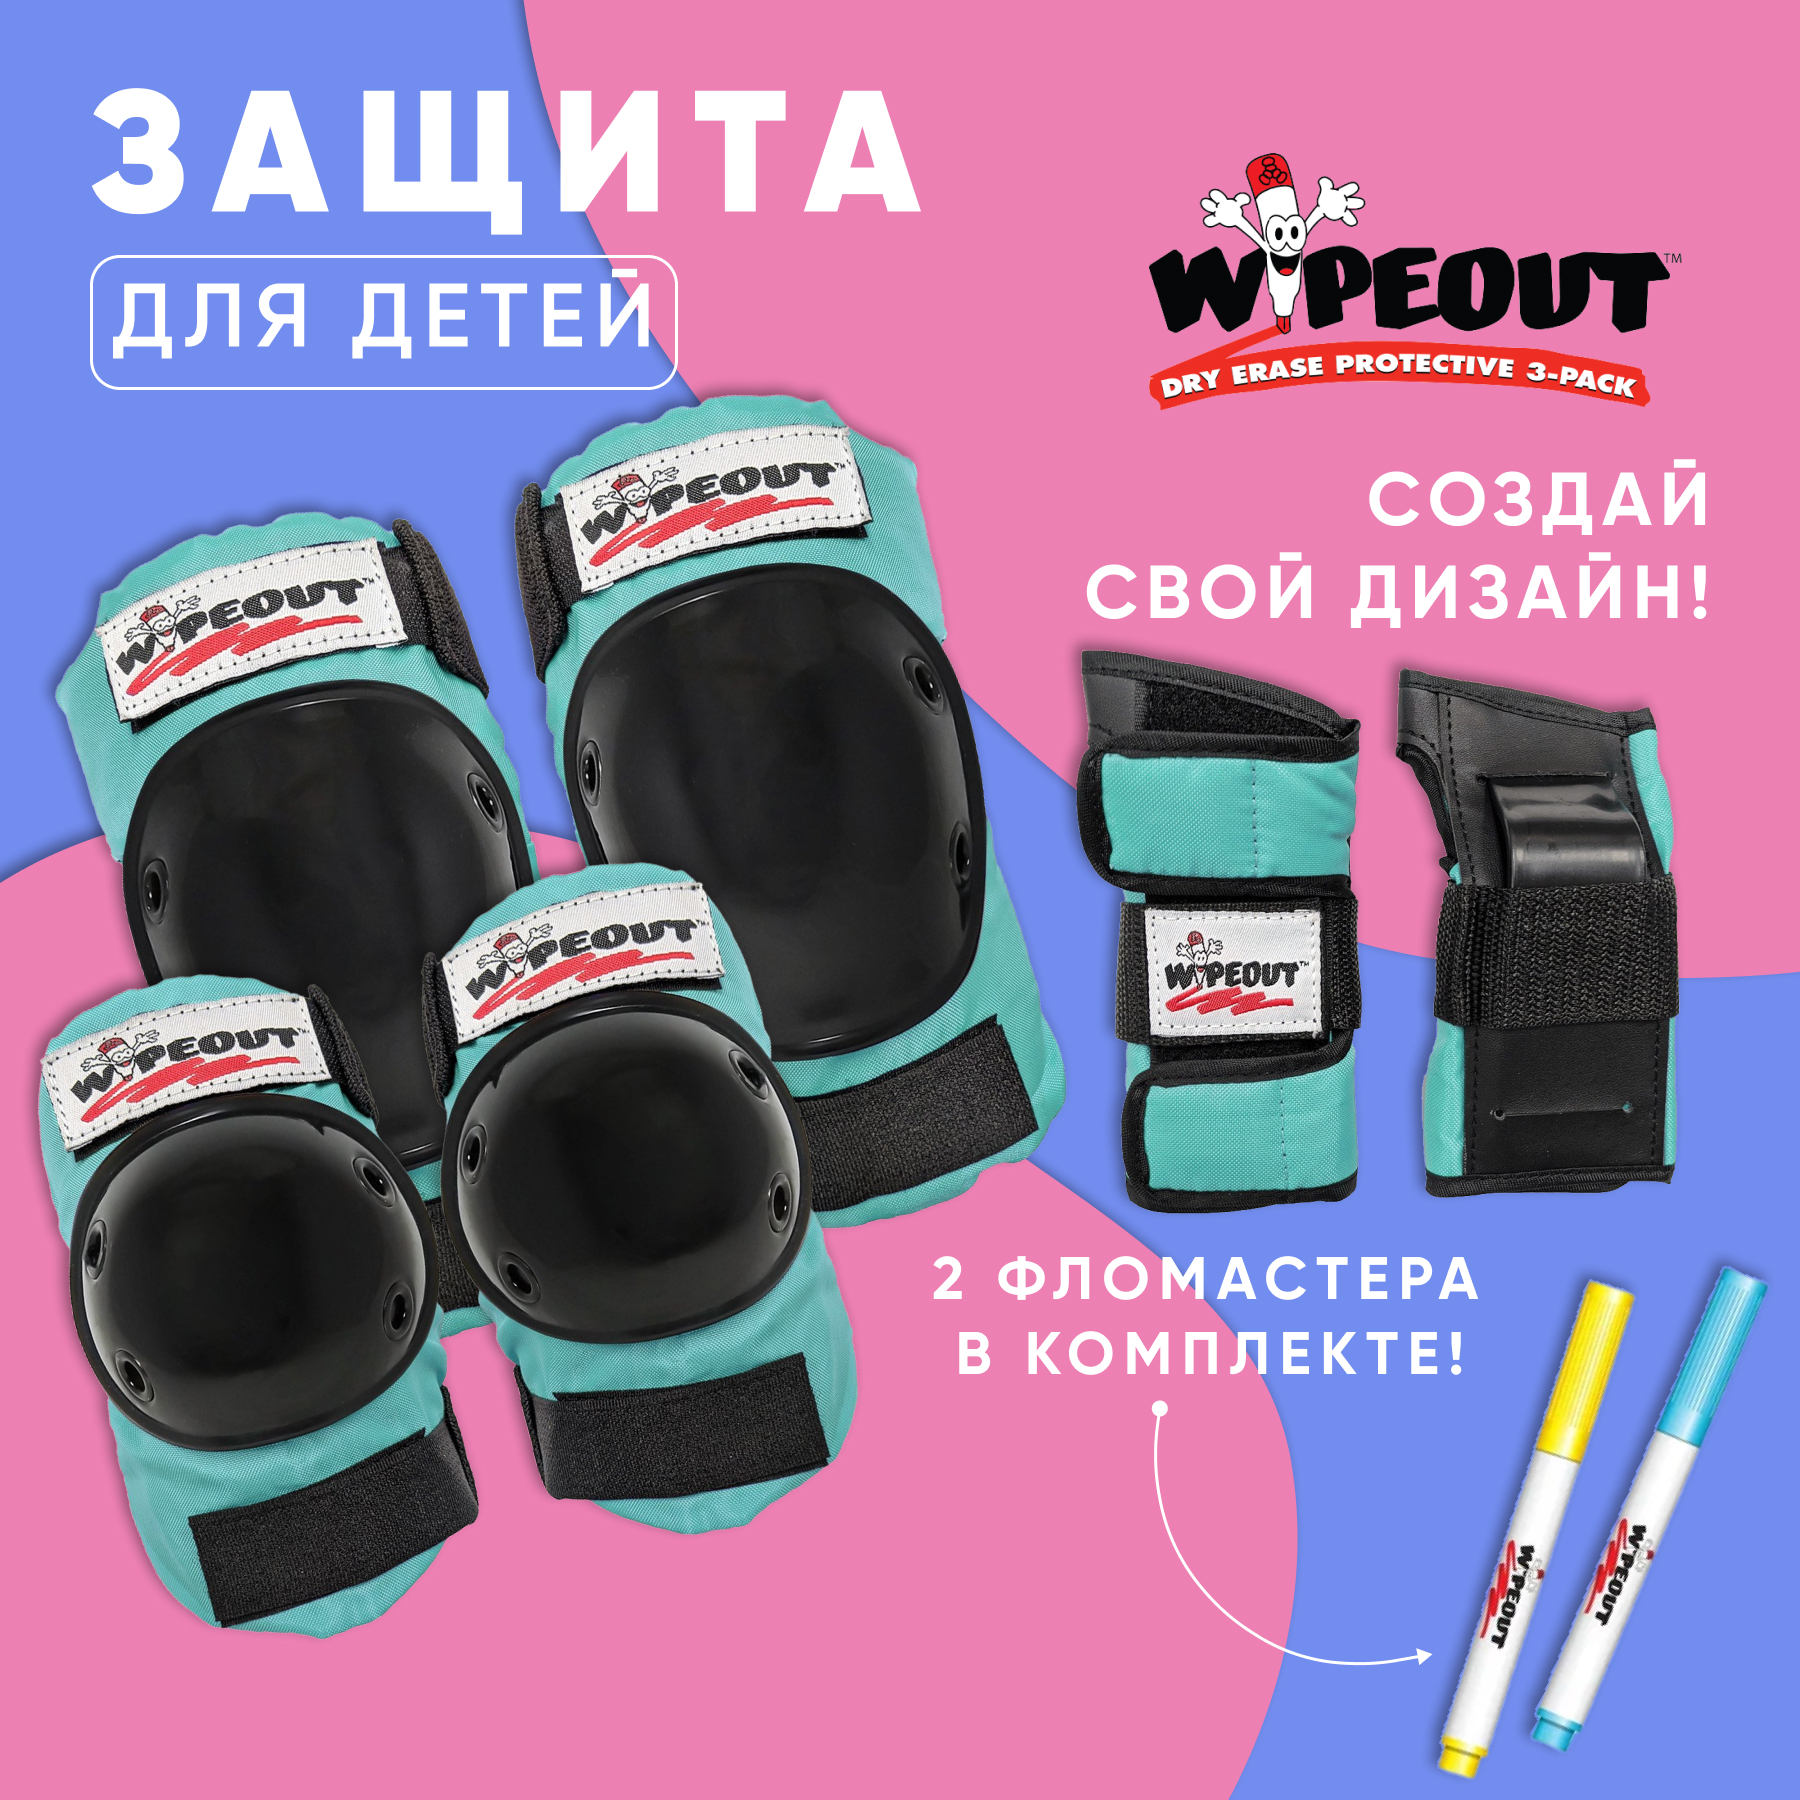 Комплект защиты 3-в-1 WIPEOUT Teal бирюзовый с фломастерами и трафаретами наколенники налокотники для запястья - фото 1